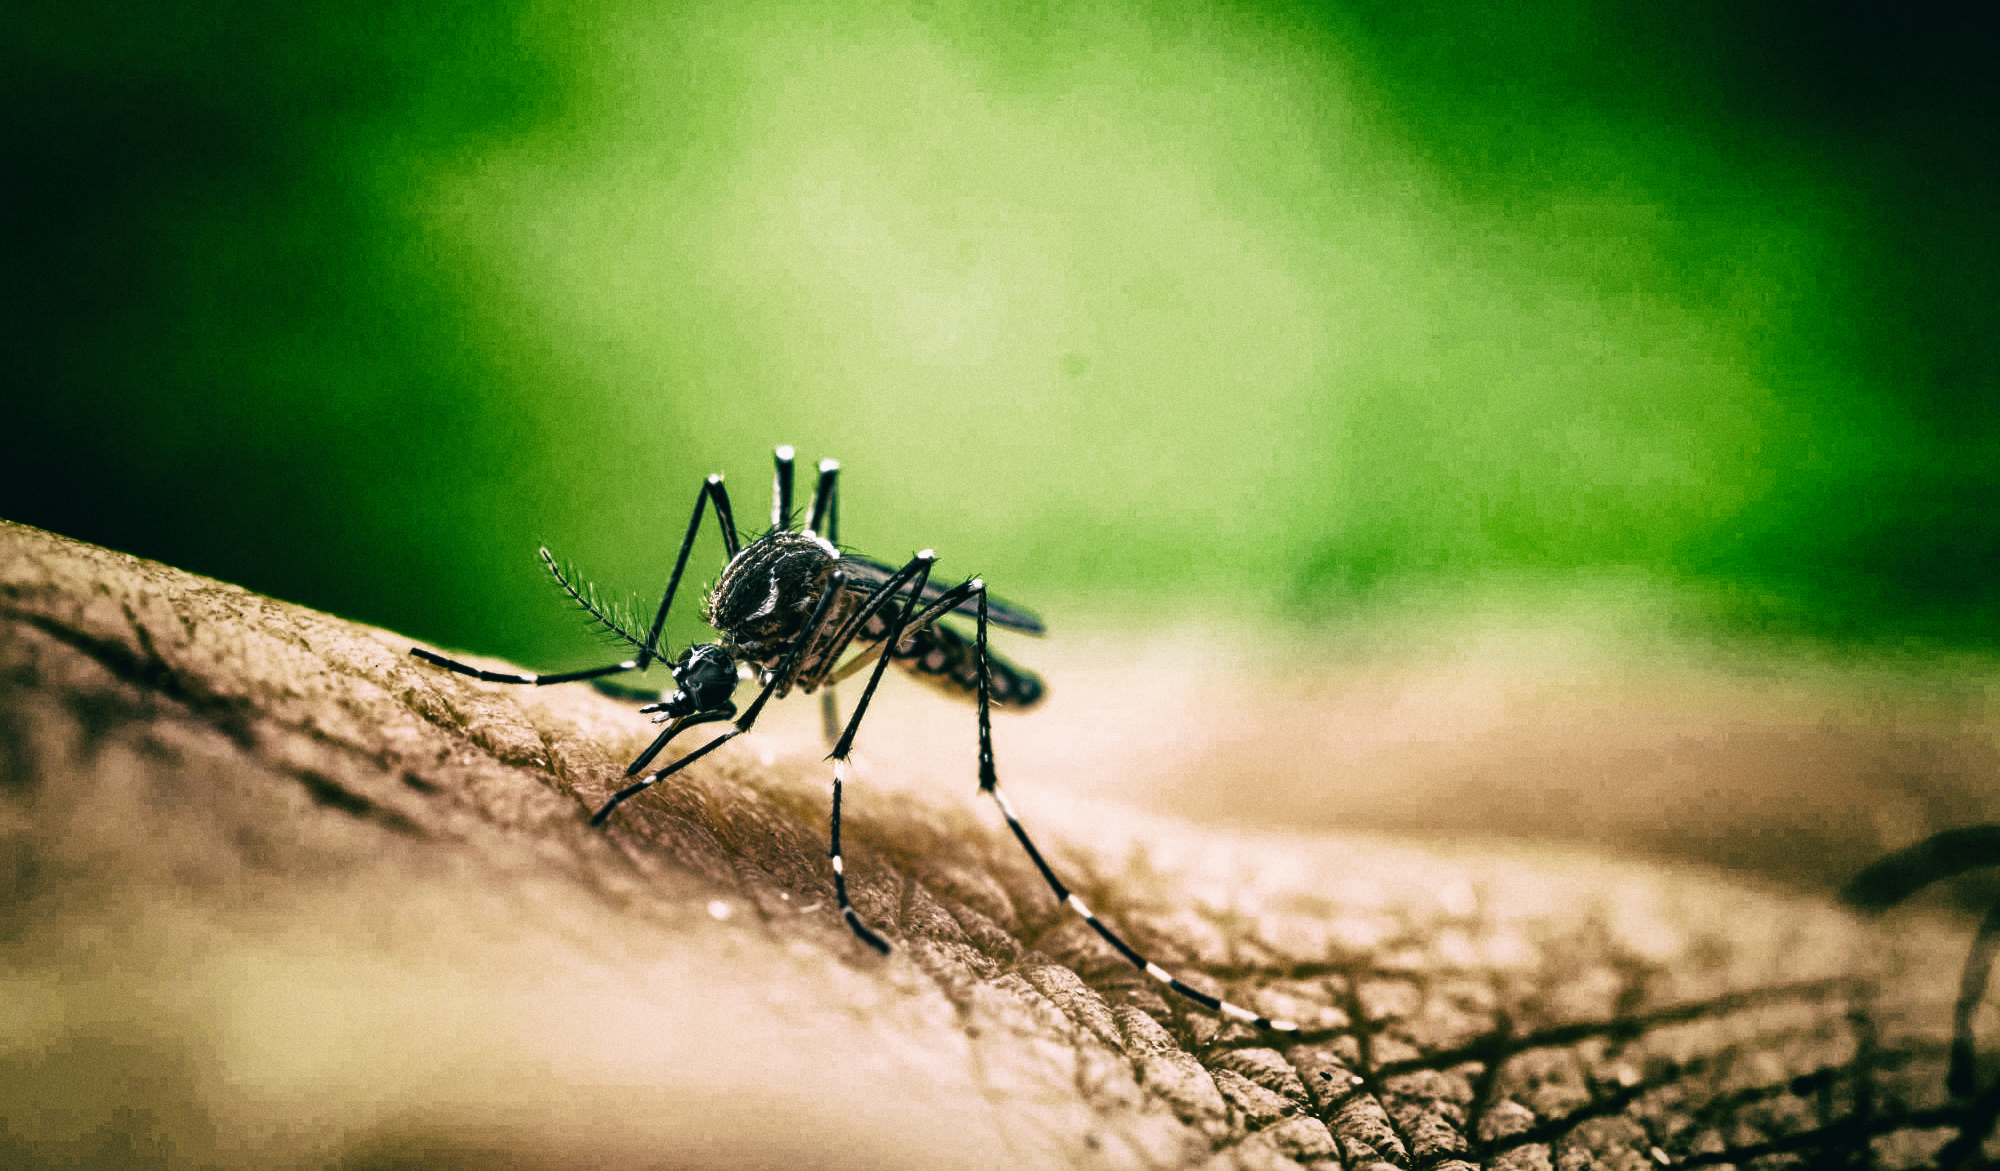 Одежда из графена может стать лучшей защитой от комаров